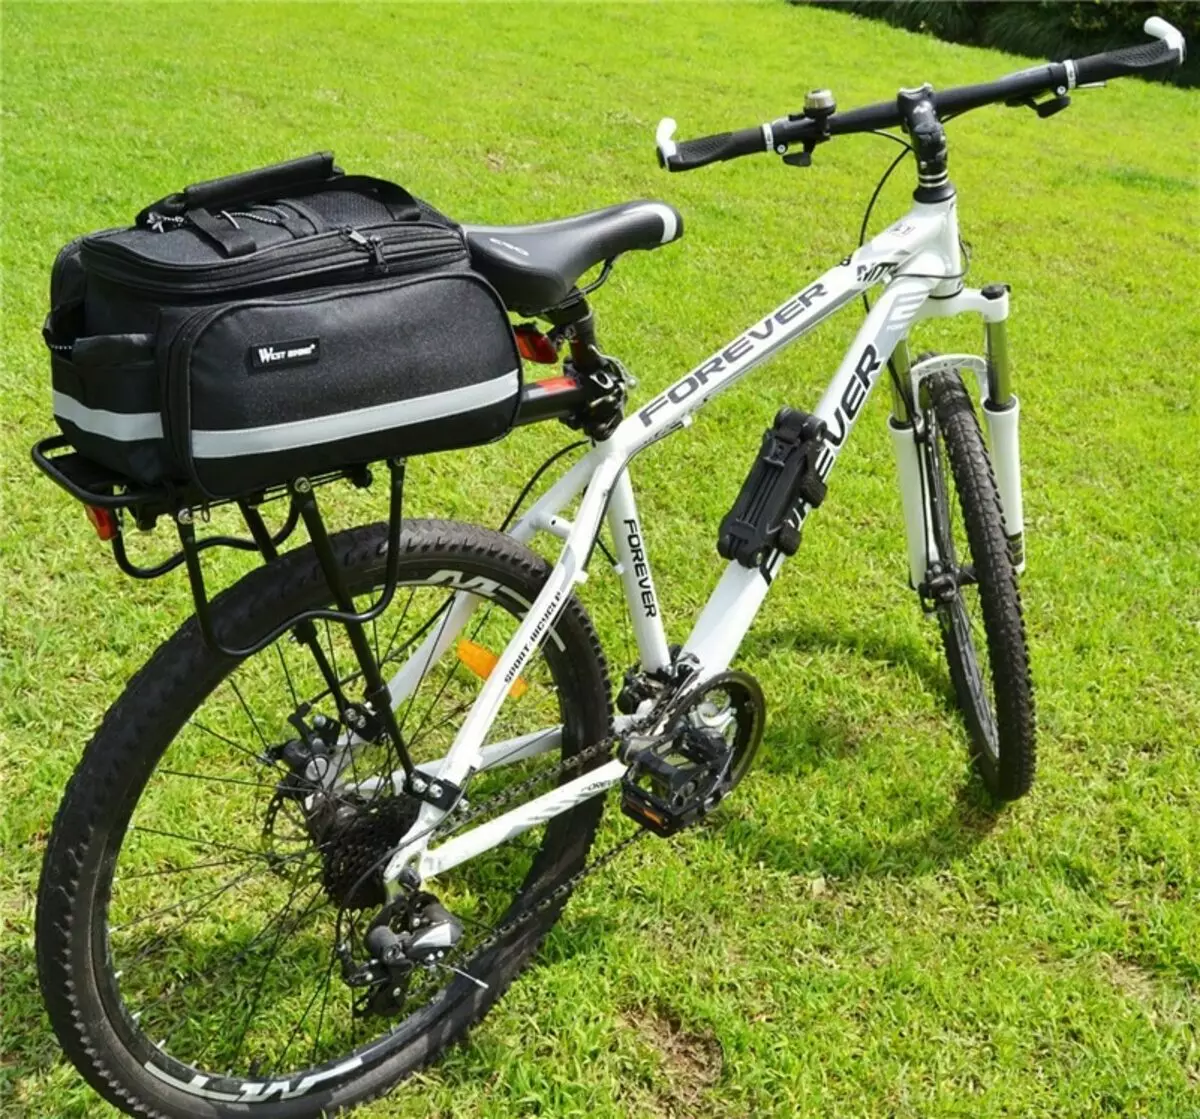 साइकिल सहायक उपकरण: साइकिल चालकों, कप धारकों और पहाड़ और अन्य साइकिलों के लिए व्यावहारिक चीजों के लिए उपयोगी साइकिल चालक 20174_41